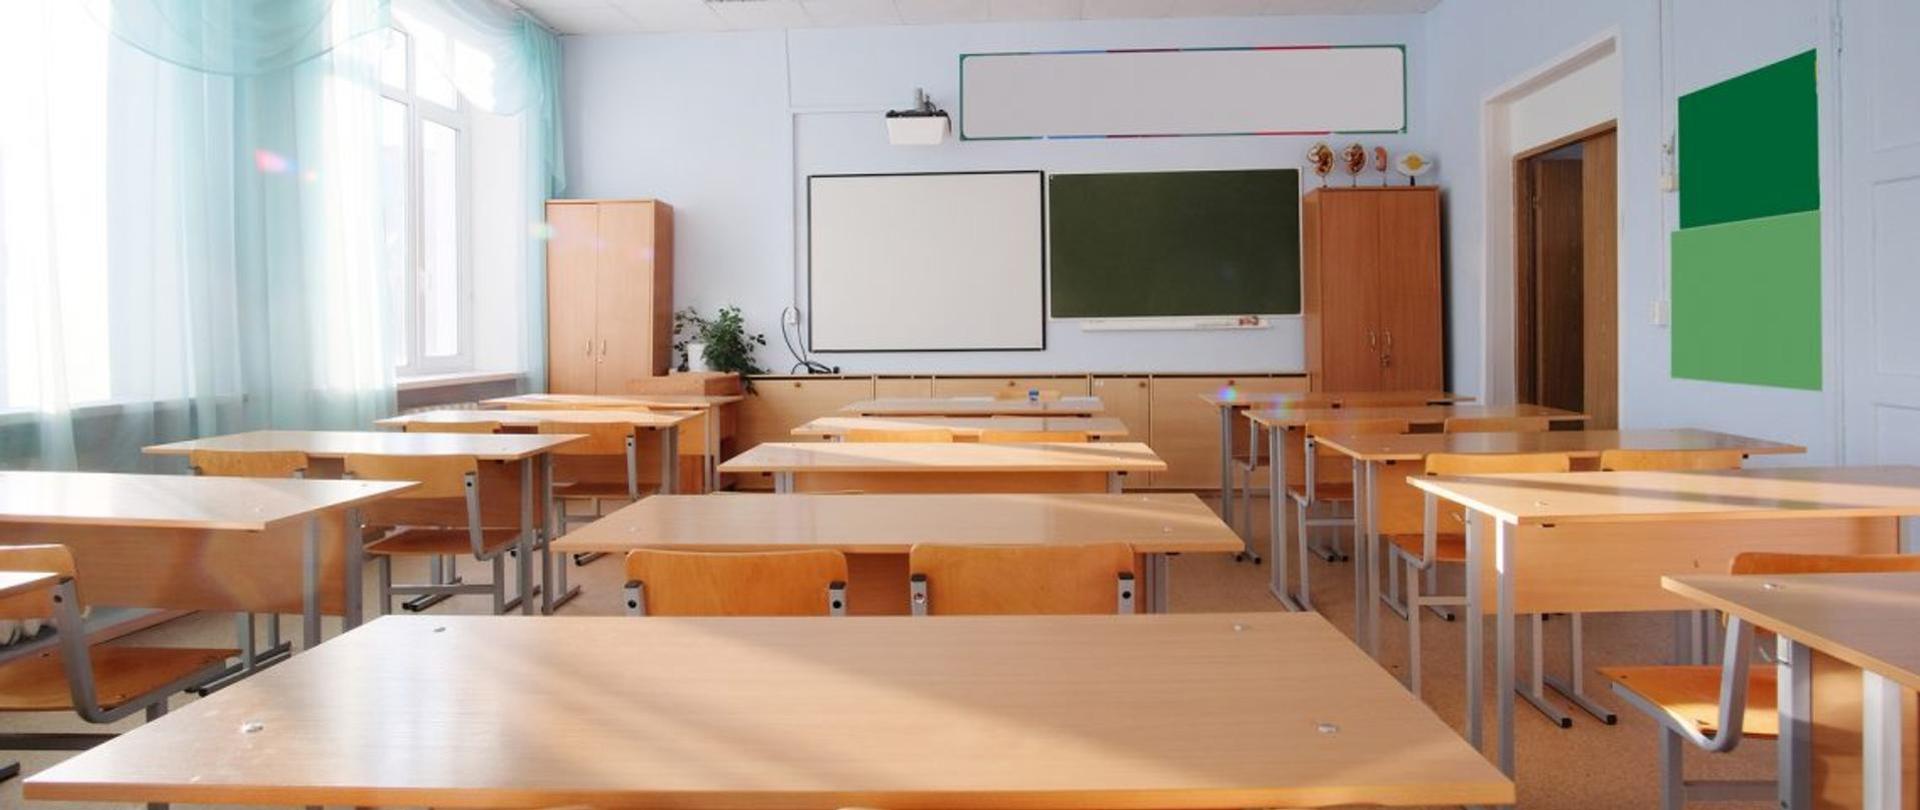 sala lekcyjna w szkole z ustawionymi w trzech rzędach ławkami na wprost których na ścianie wiszą dwie tablice 